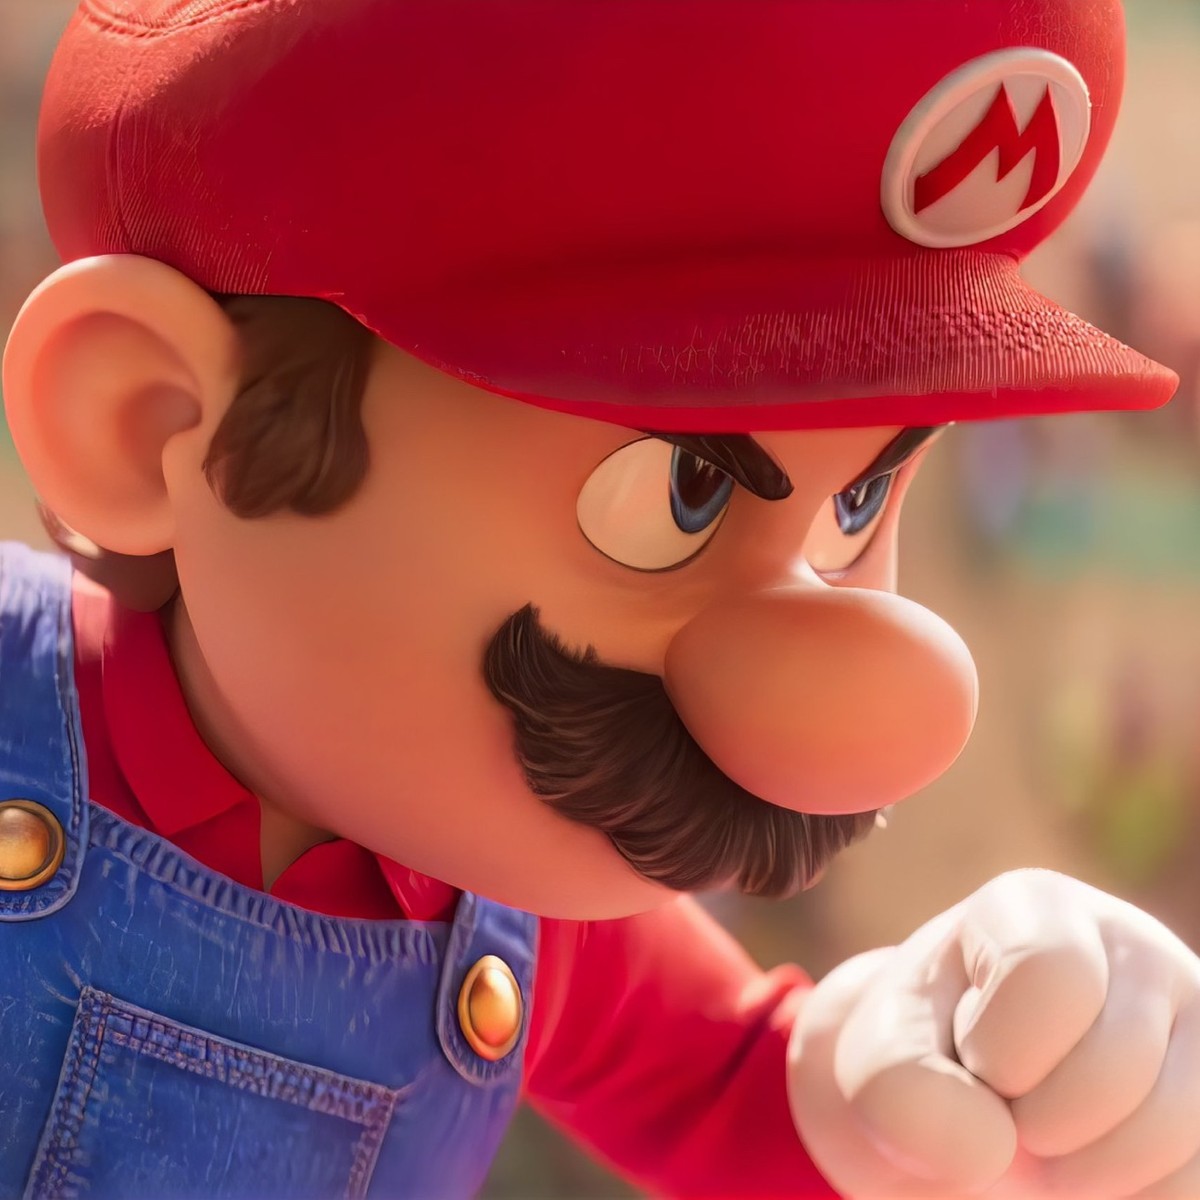 É bom reivindicar esse momento: Fazer Super Mario Bros. deu a